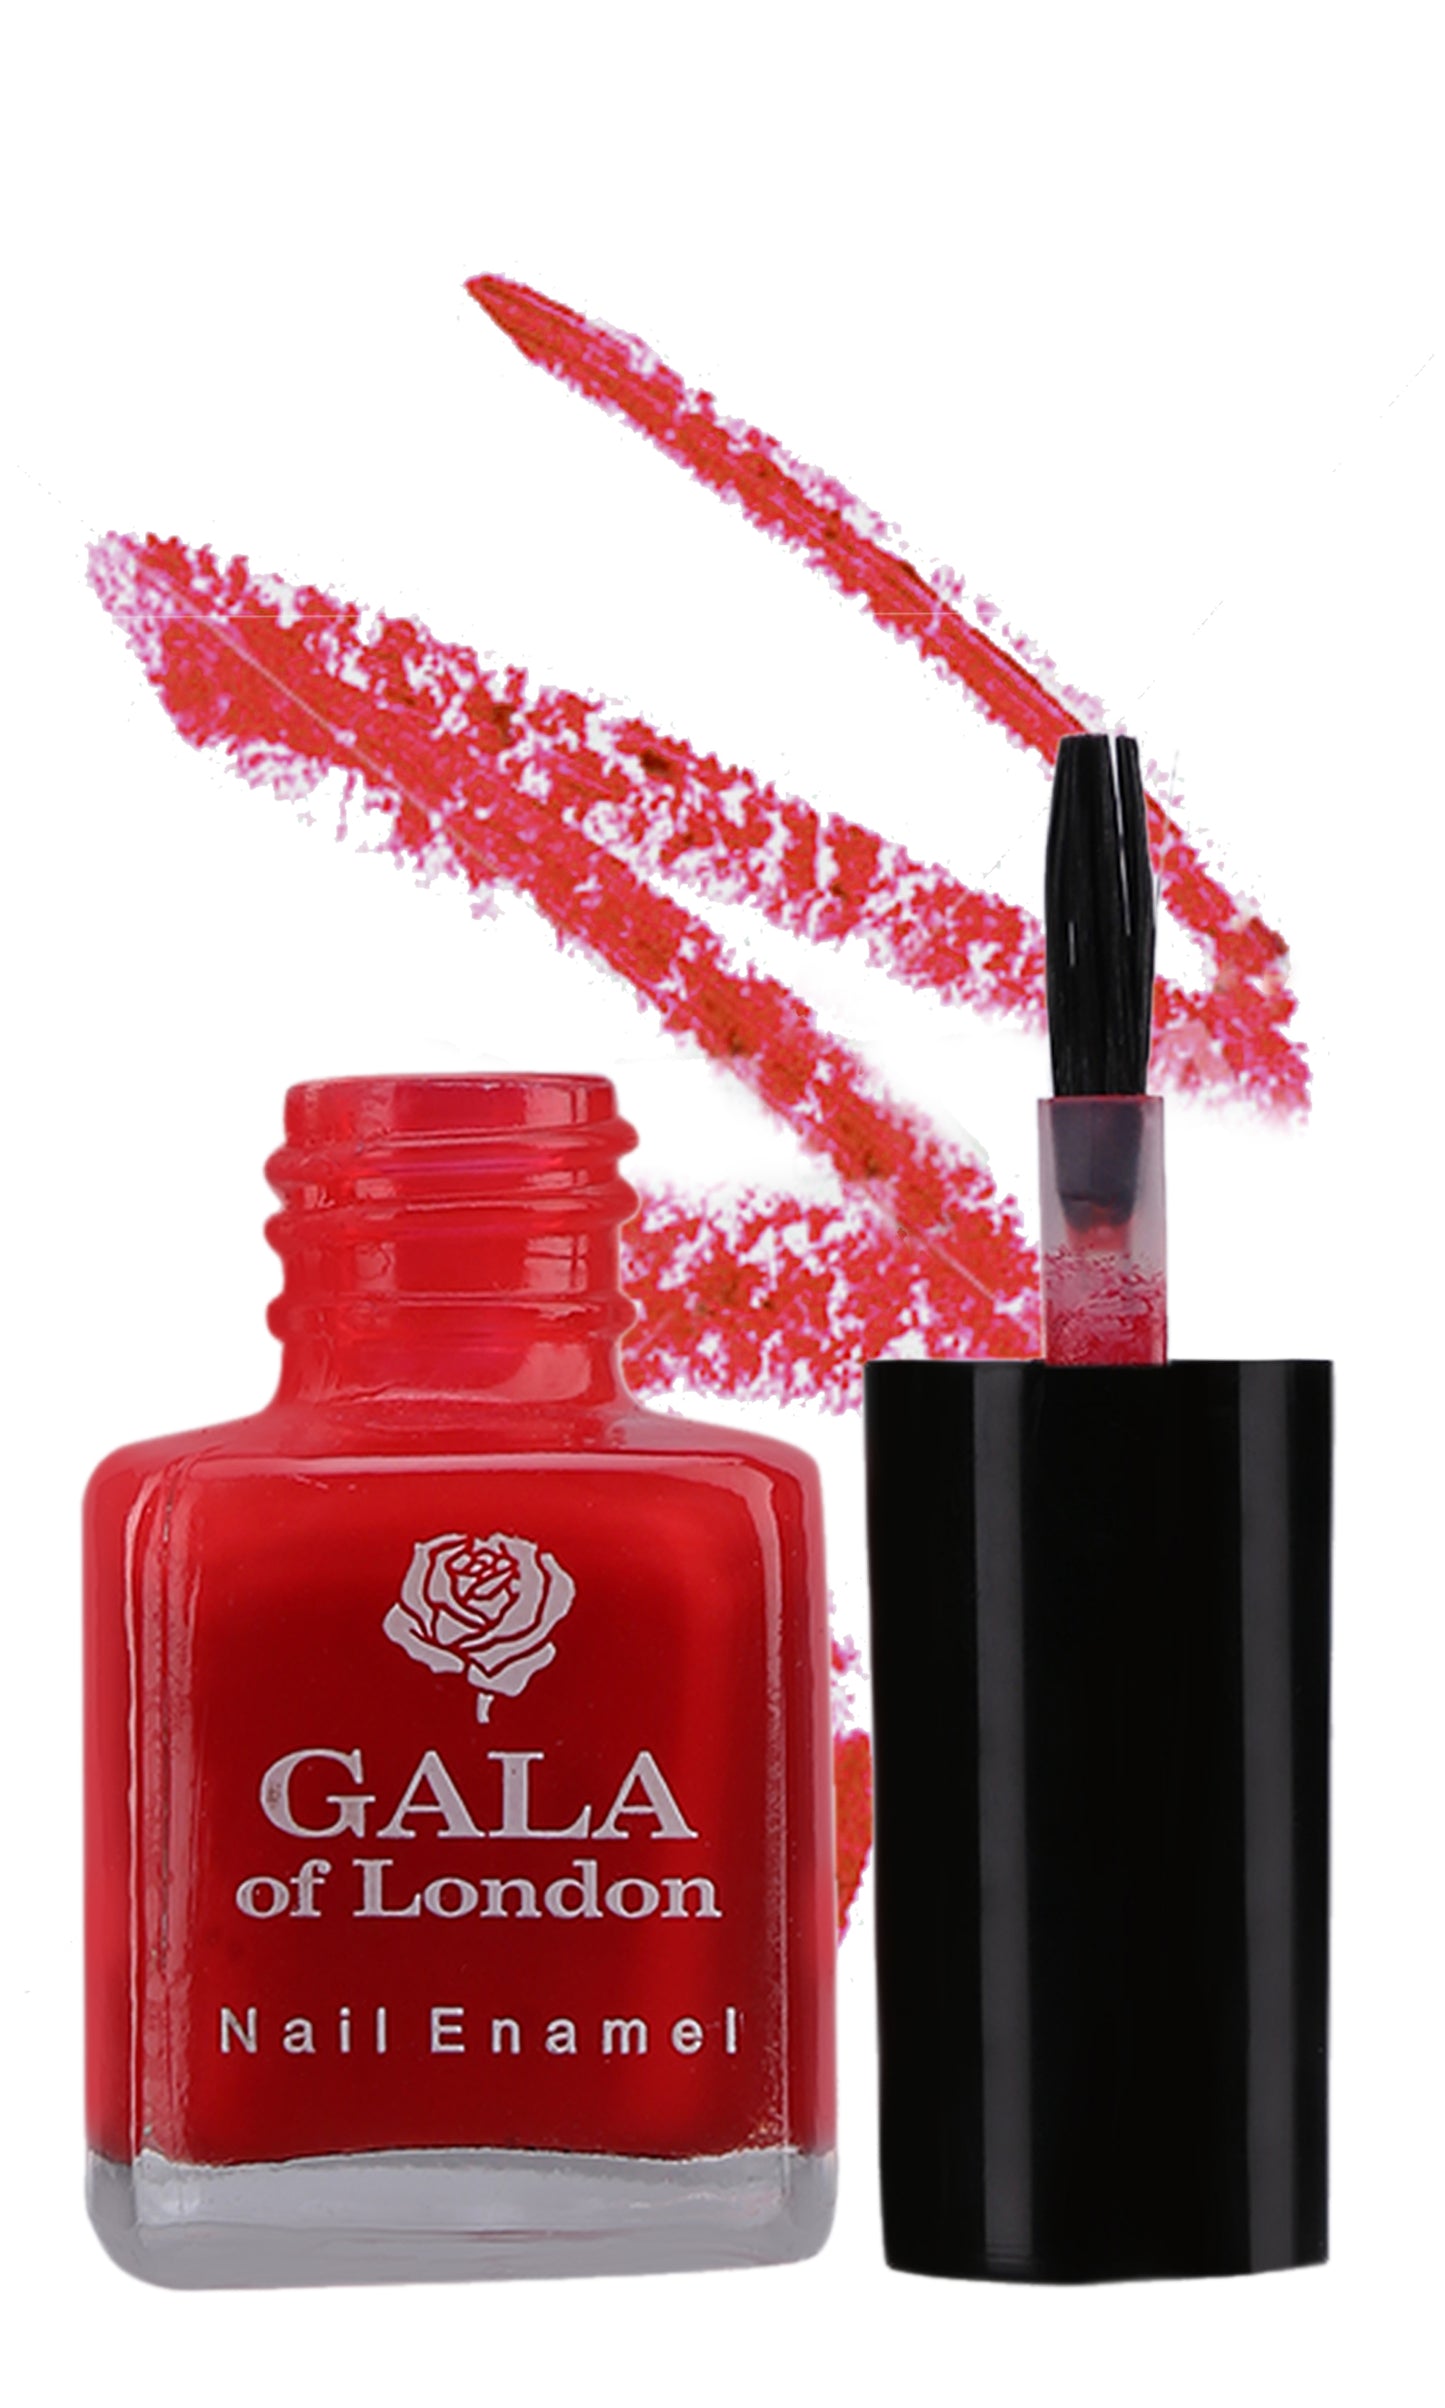 Gala of London Fashion Nail Enamel - Red Glossy N62